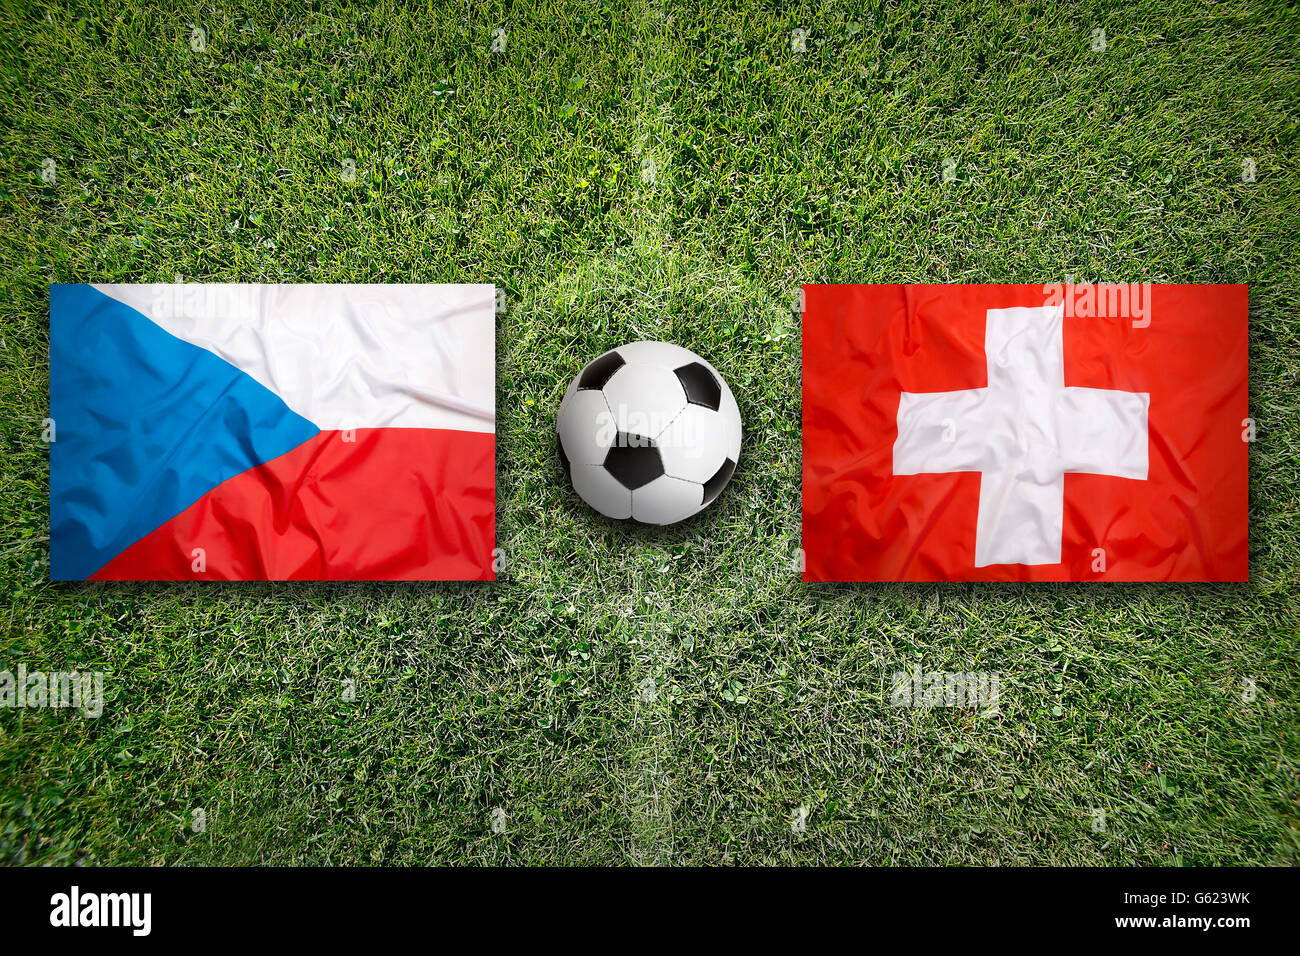 Czech Republic vs. Switzerland flags on green soccer field Stock Photo